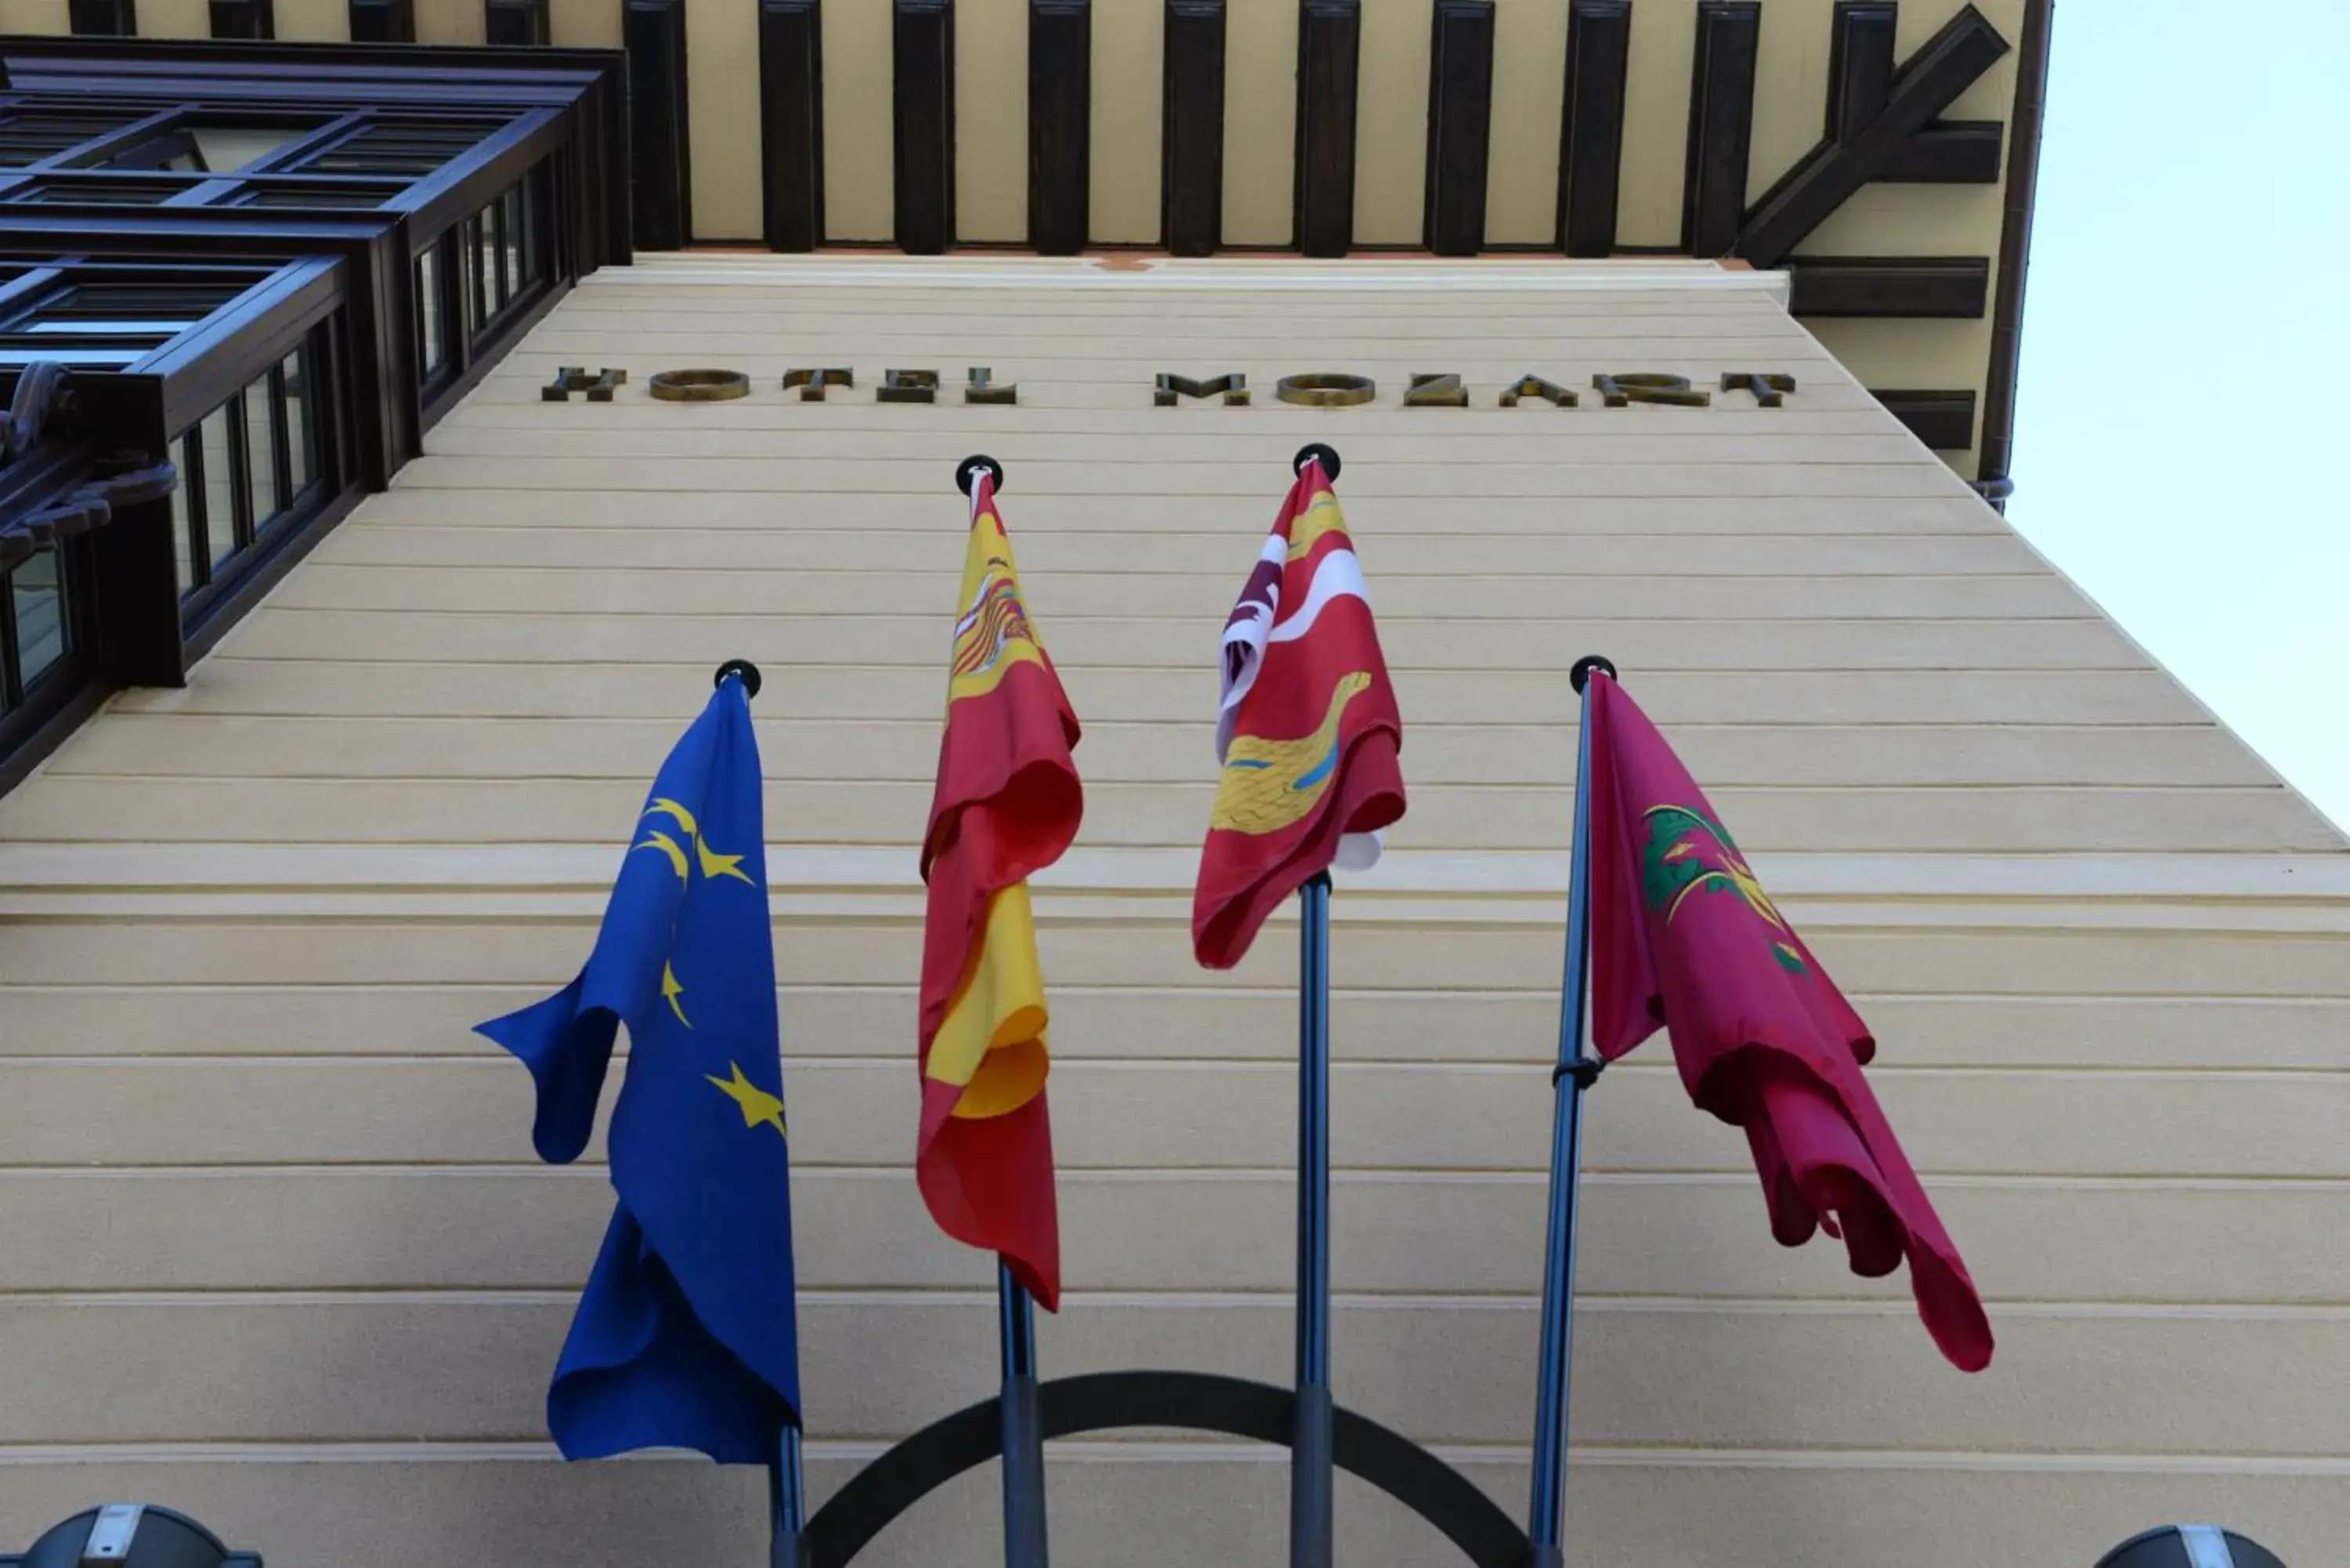 Facade/entrance in Hotel Mozart